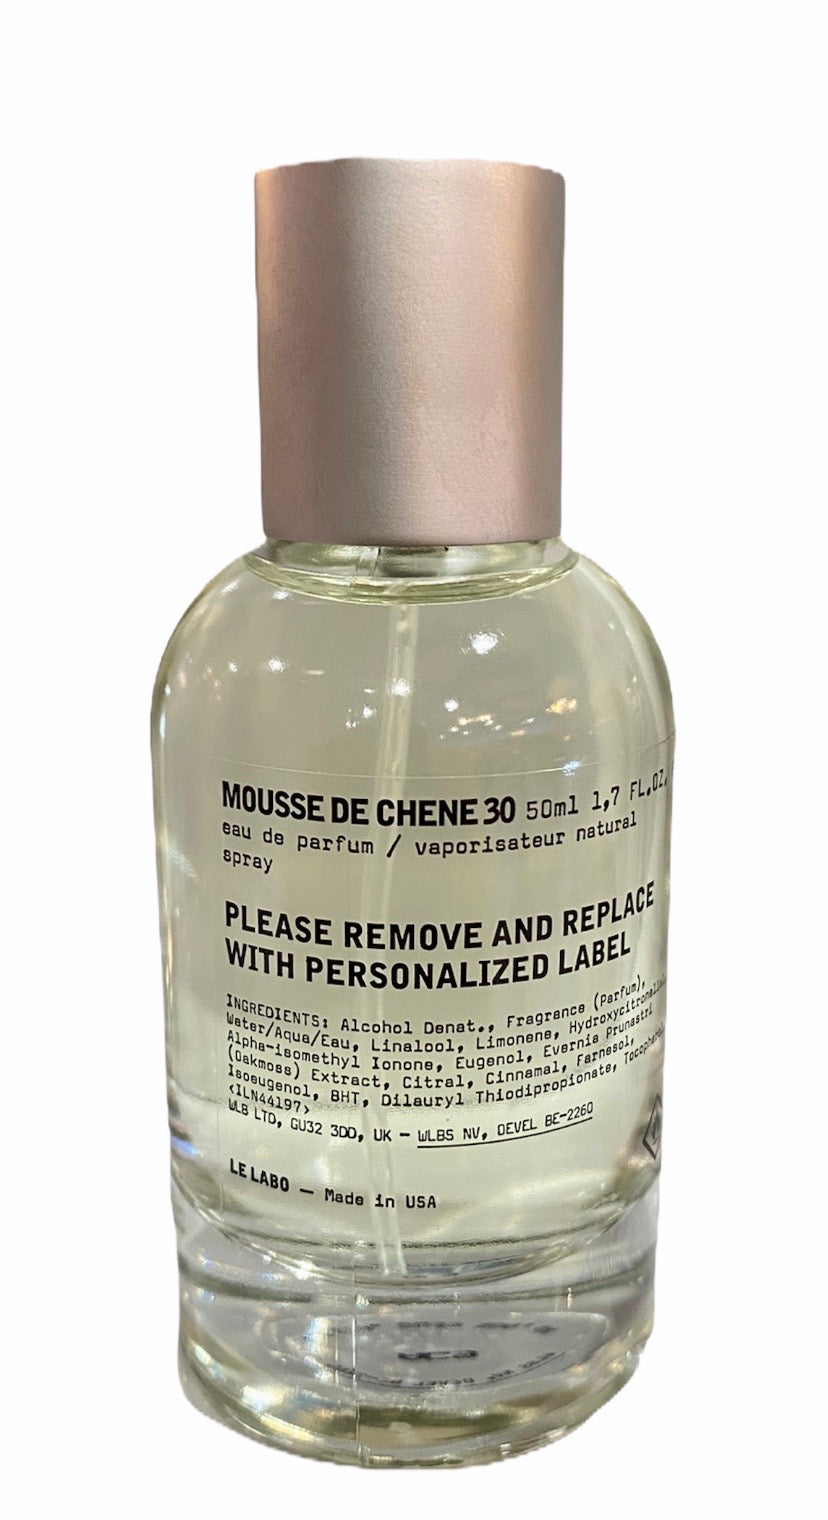 mousse de chene 30 perfume 1.7oz unixes - alwaysspecialgifts.com